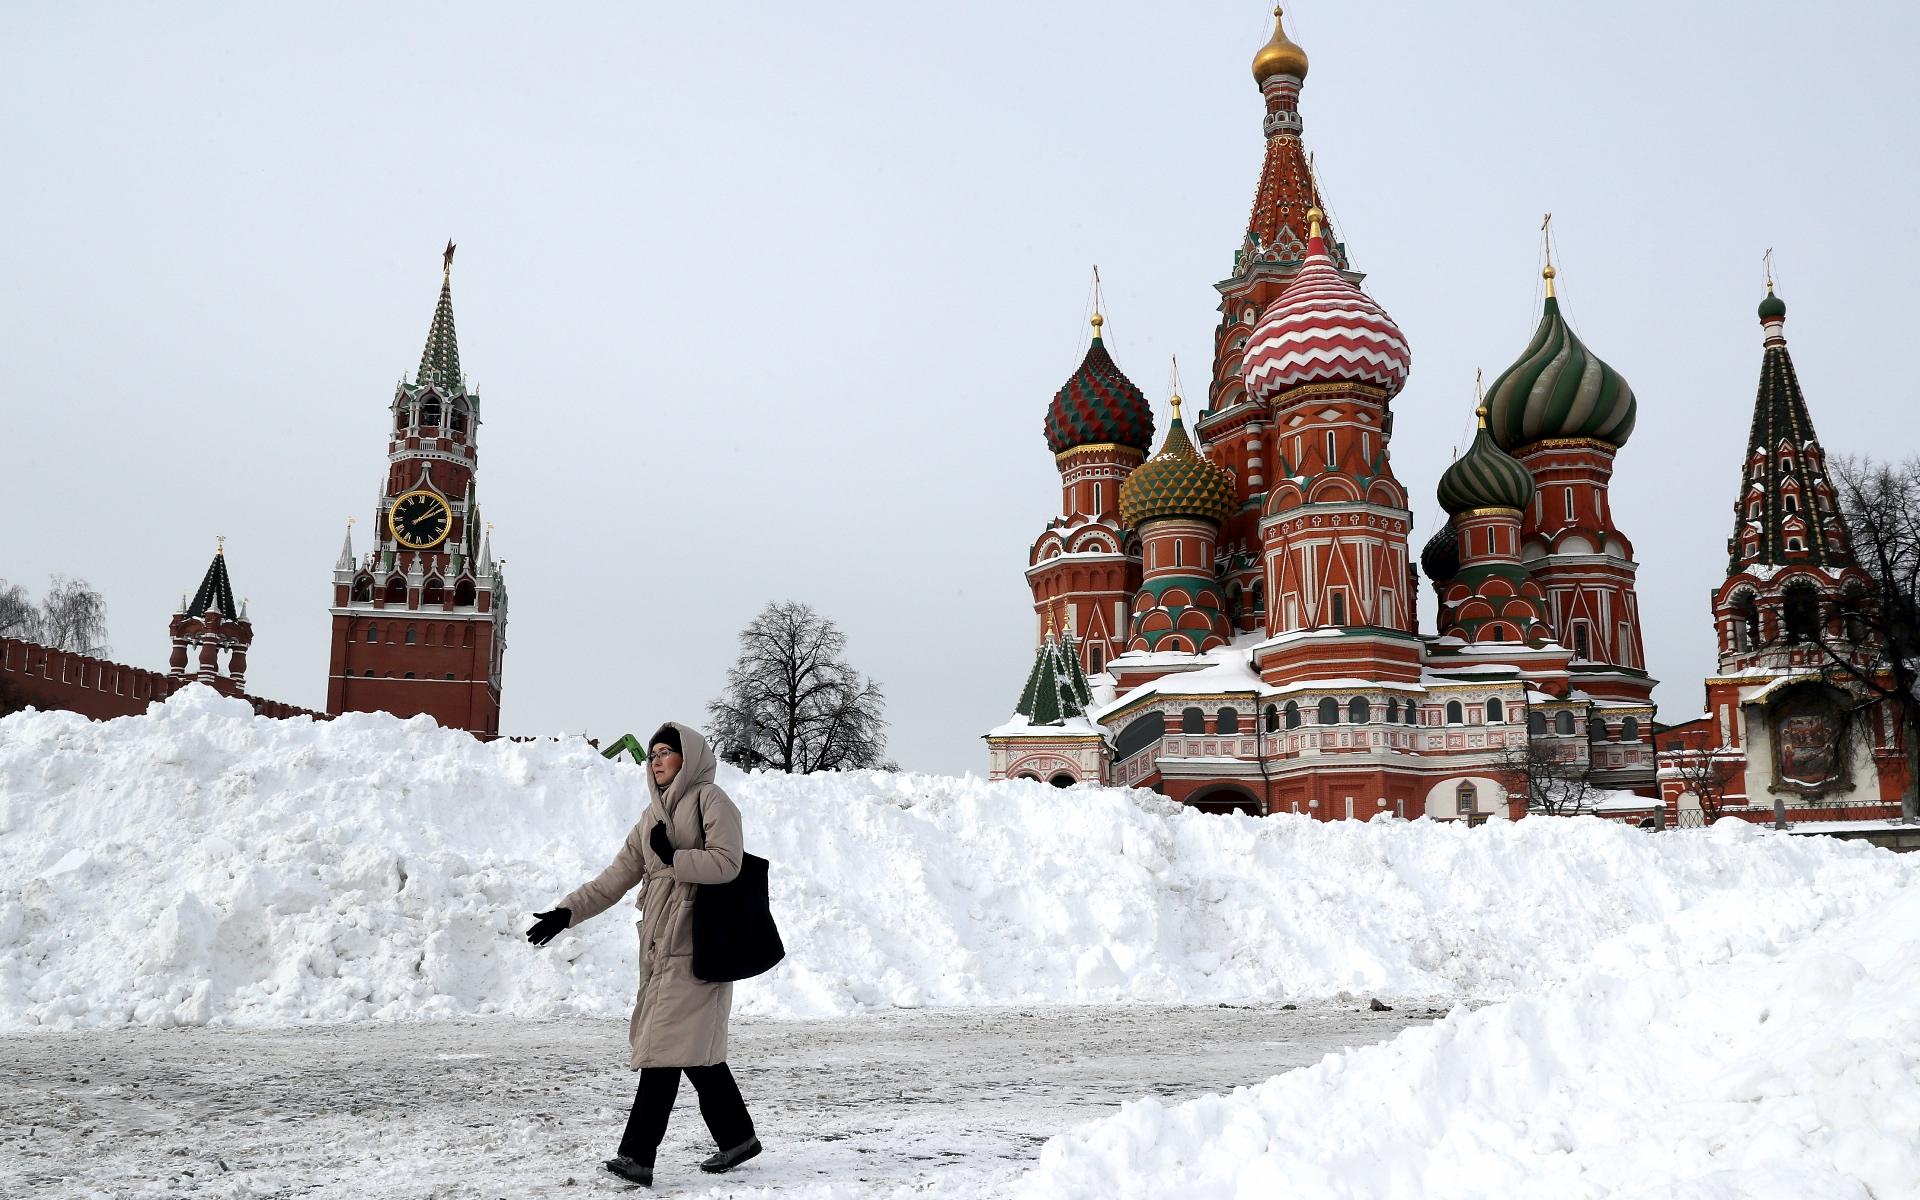 Москва📸 Куда пойти? on Instagram: “Зима в Москве начнется вовремя❄️ 1  декабря температура снизится вплоть до -6 градусов, а влага на дорогах  превратится в голо…